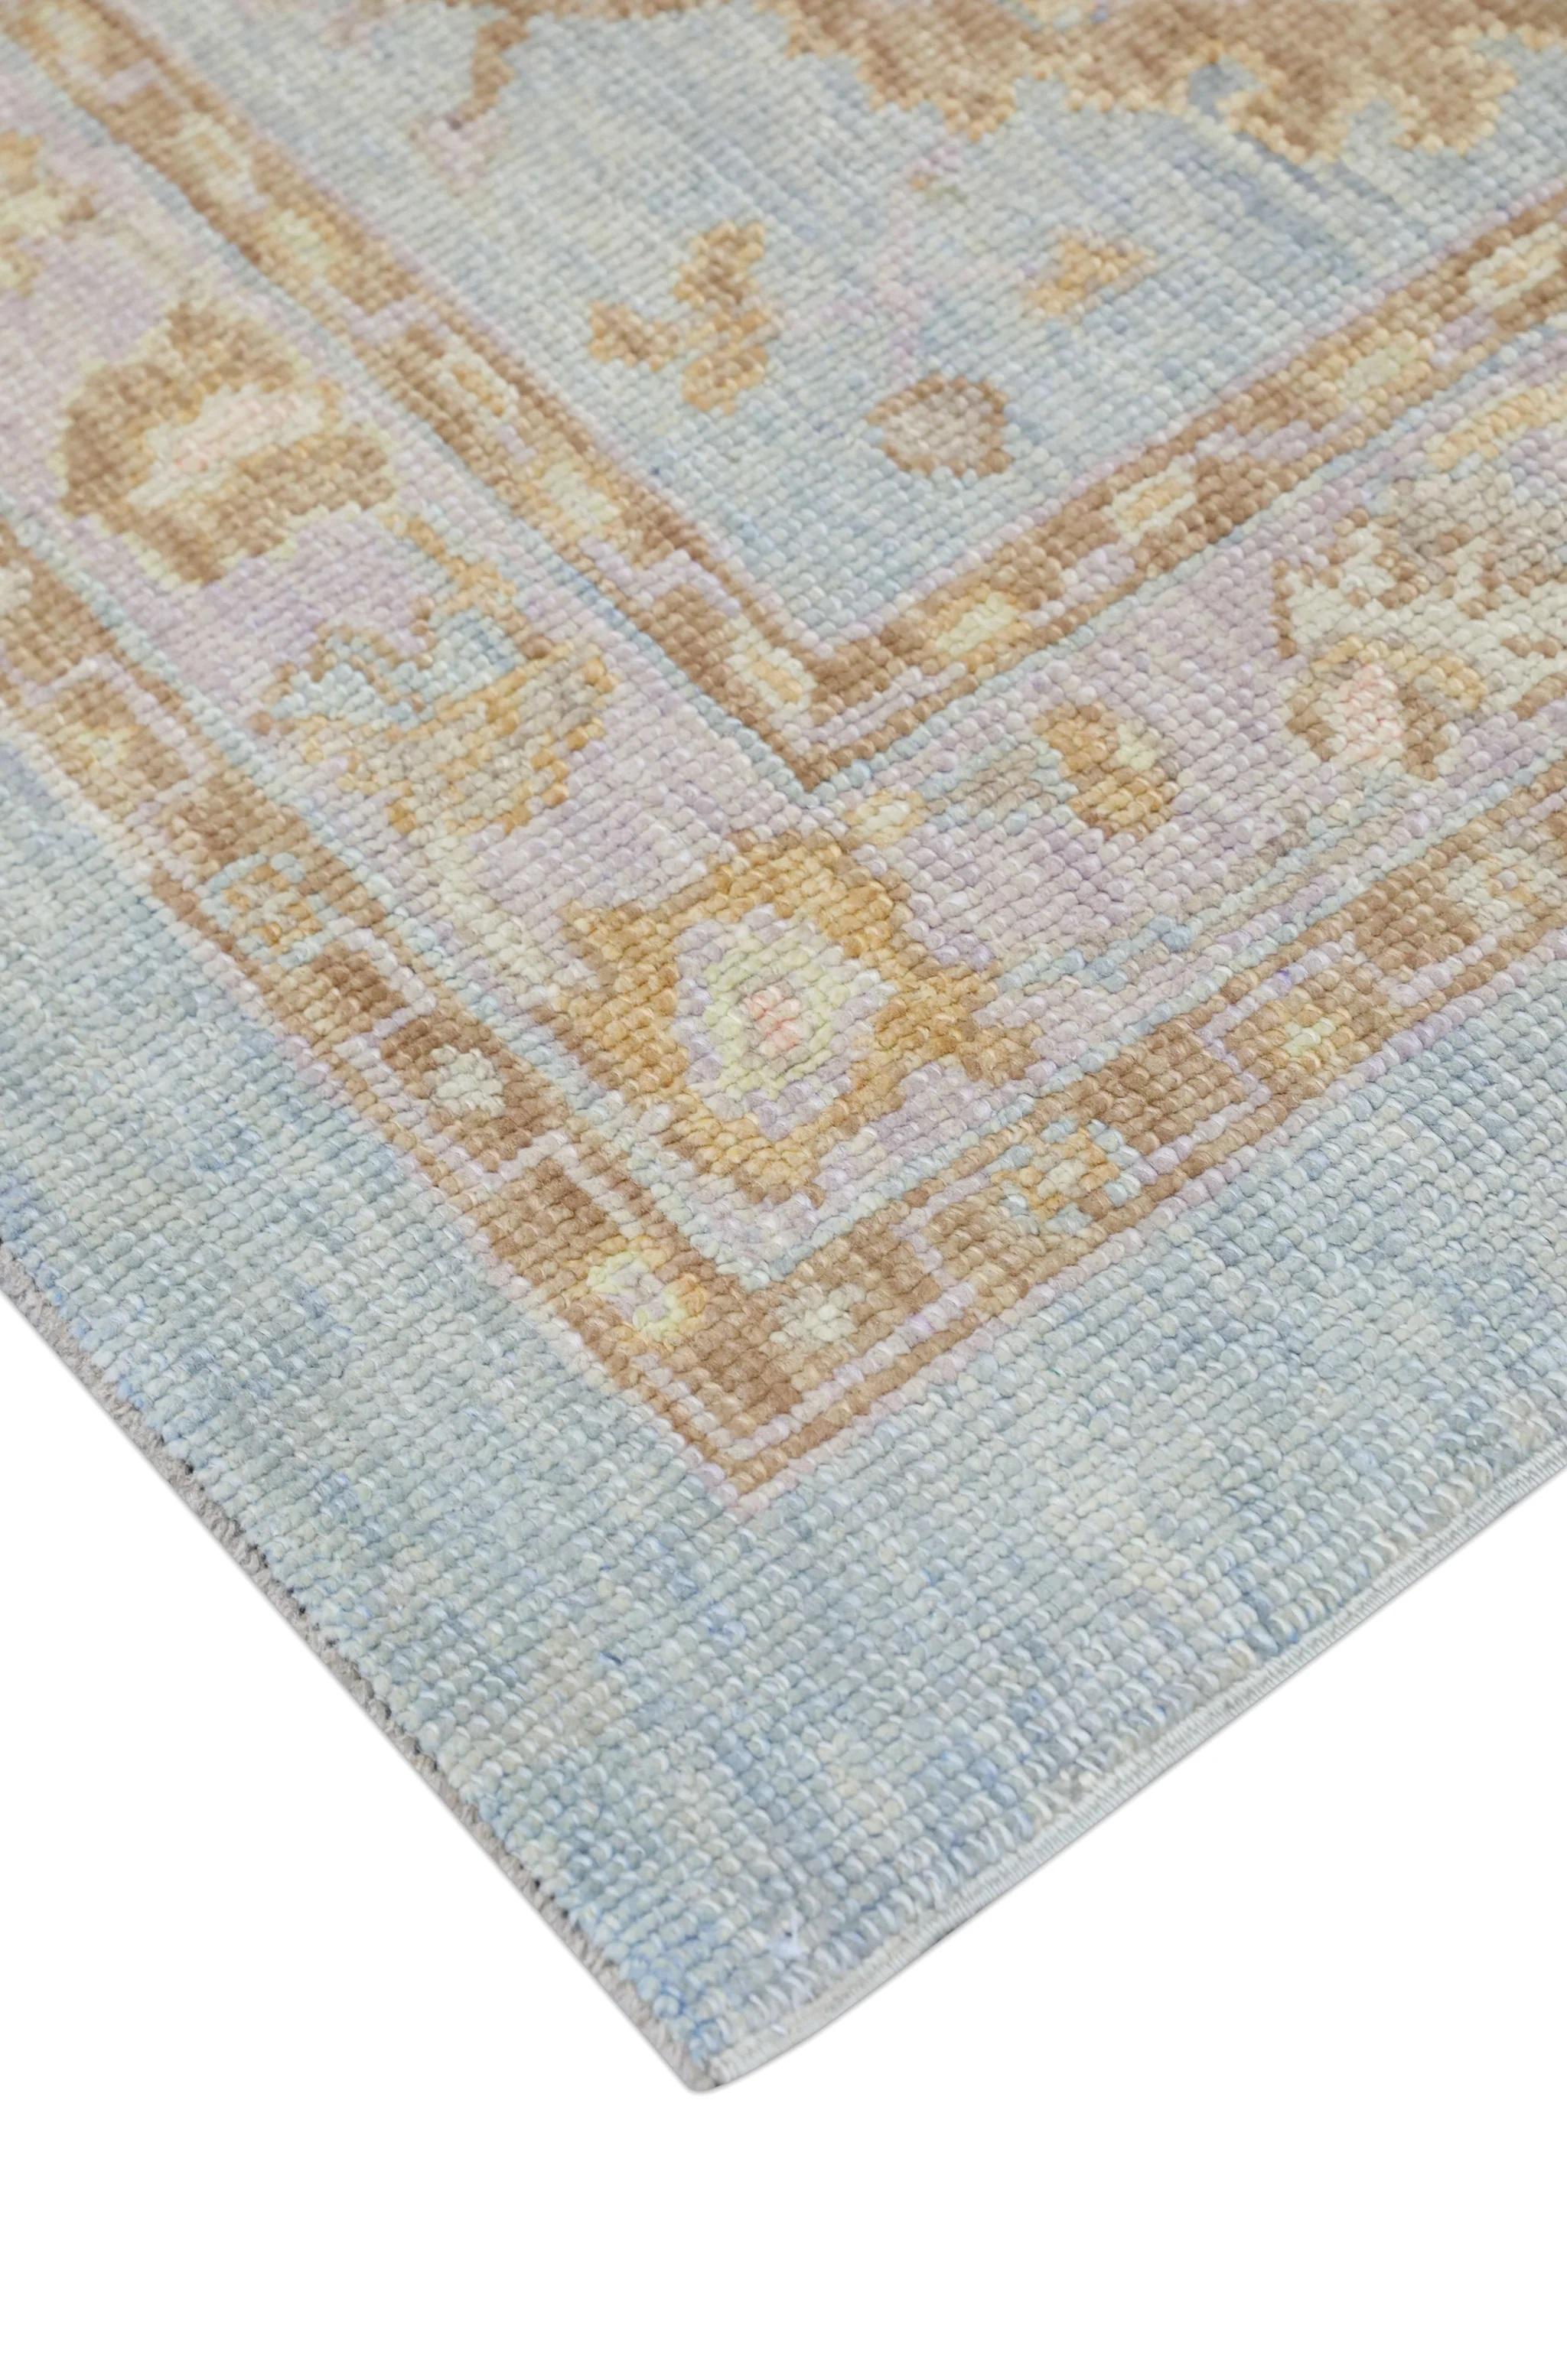 Soft Blue Floral Design Handwoven Wool Turkish Oushak Rug 3'1